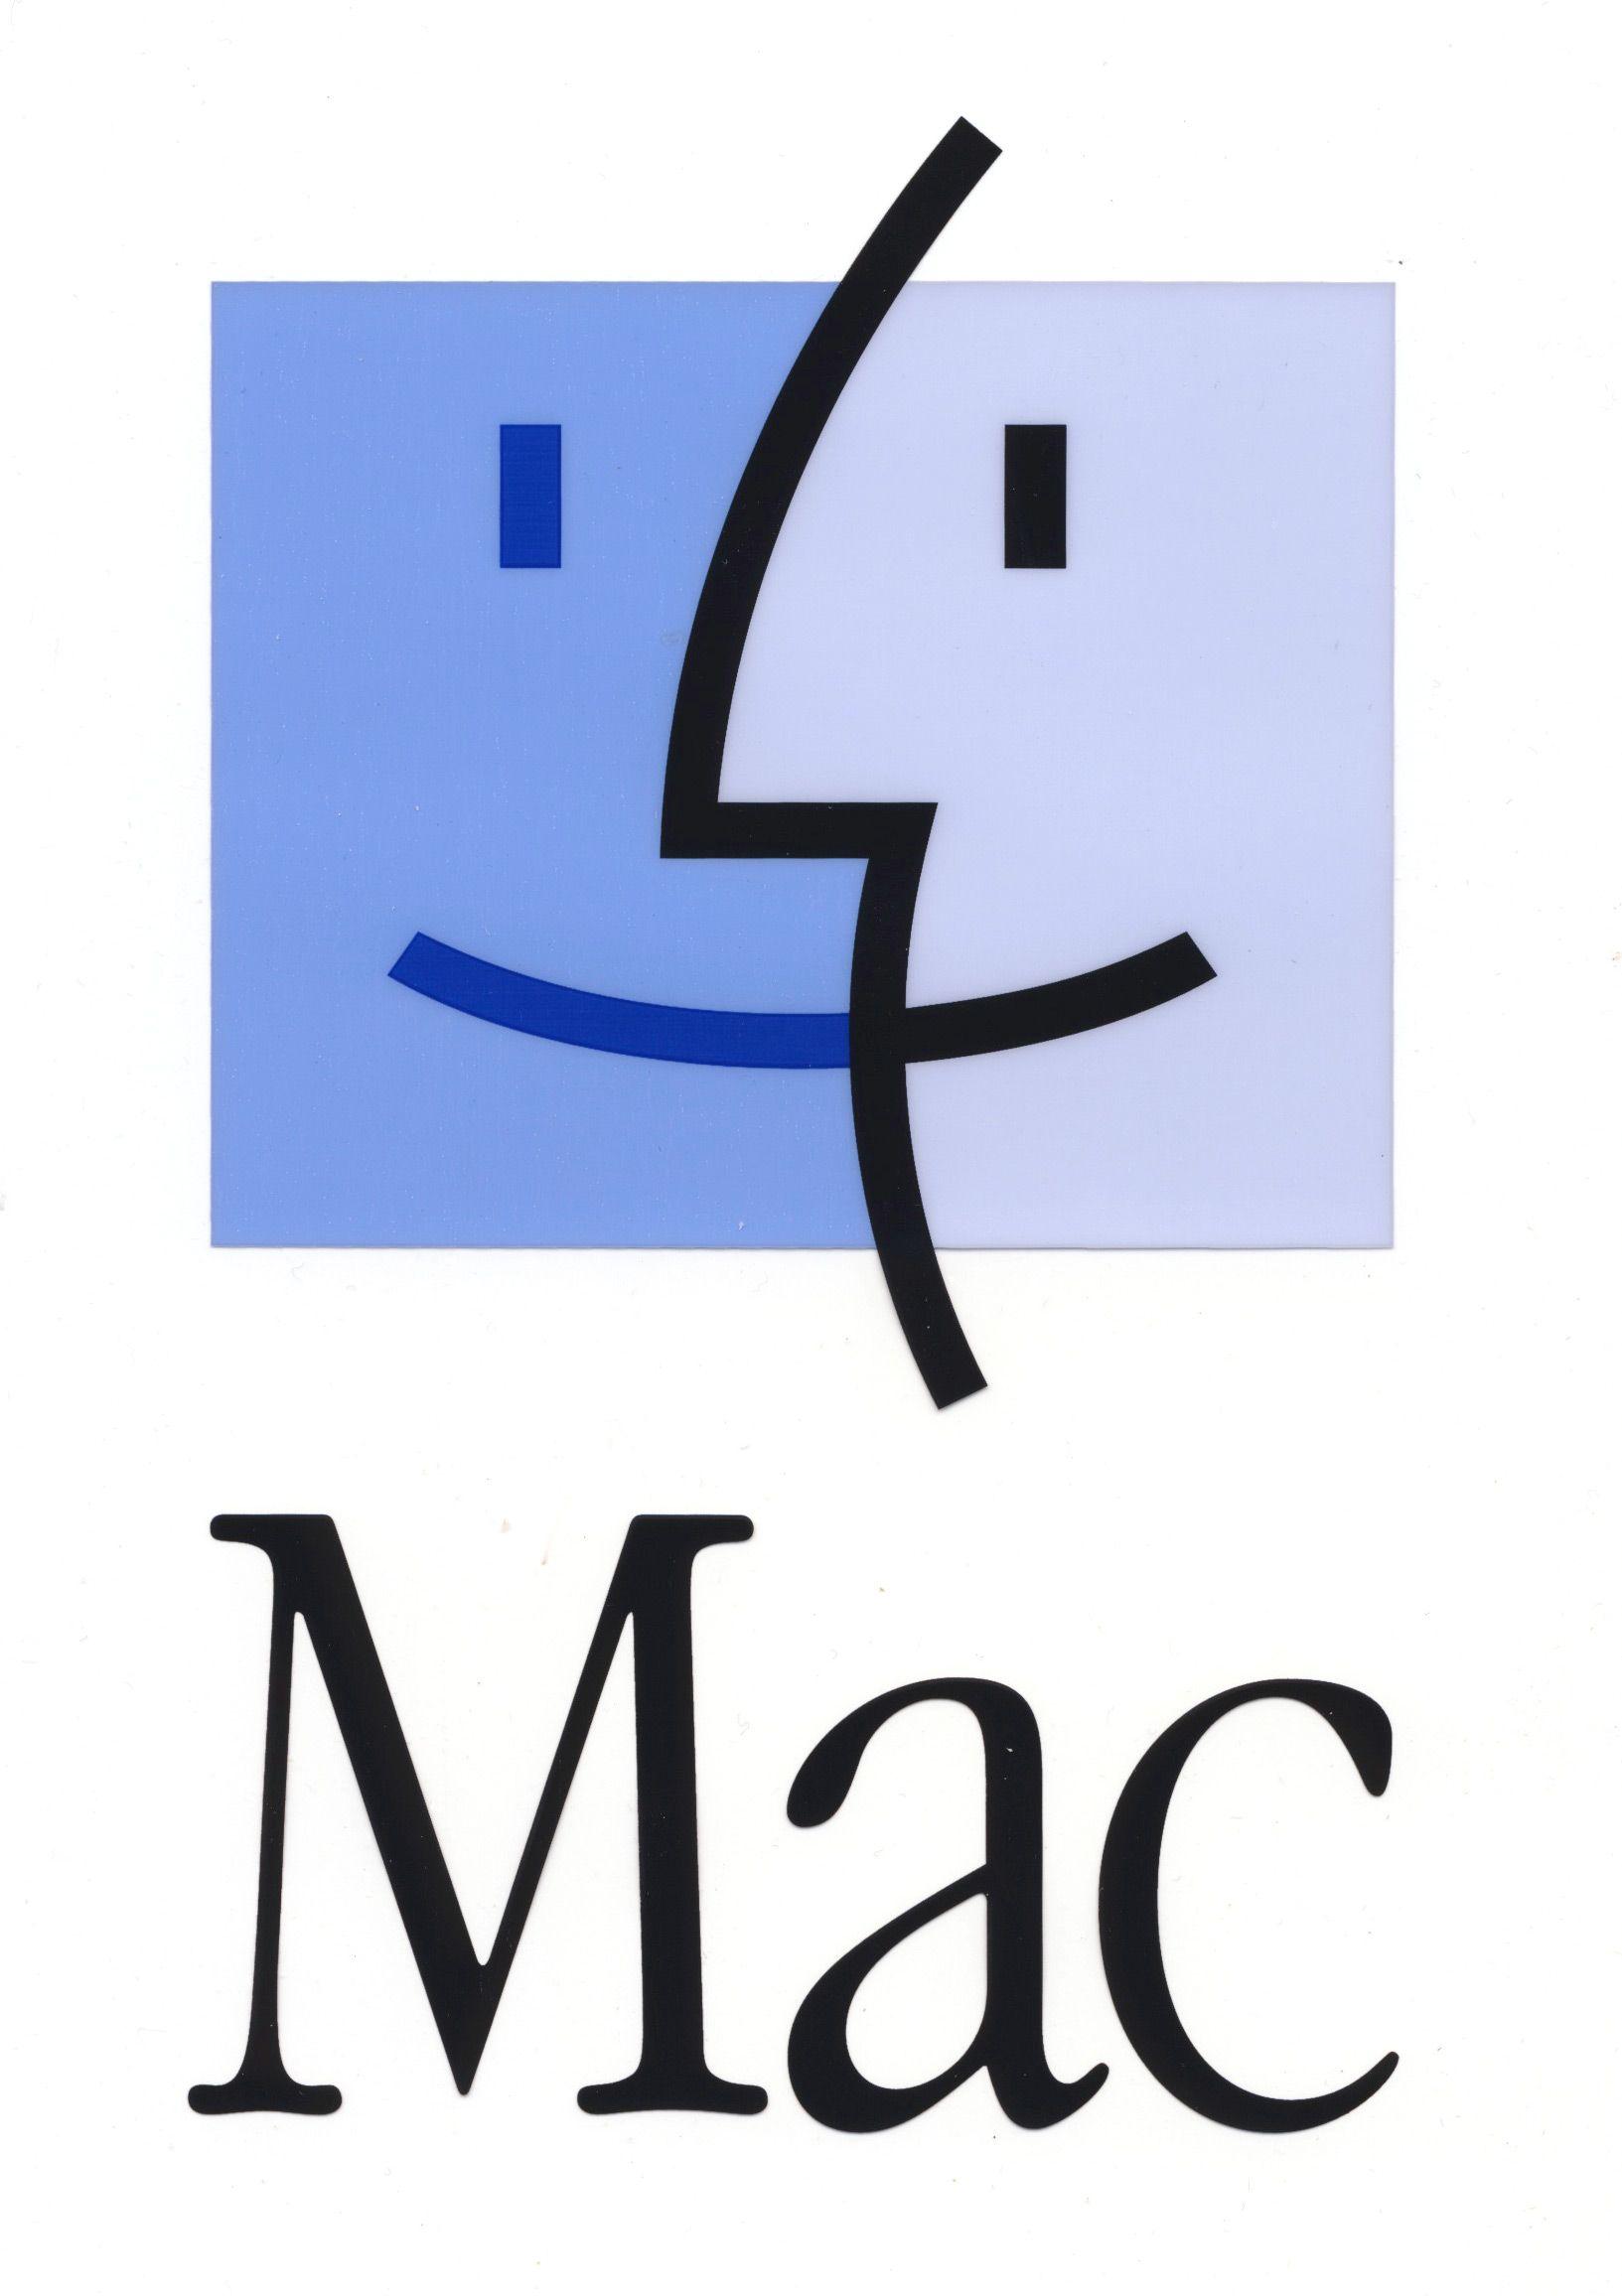 Macintosh Logo - Image - Apple mac.jpg | Logo Timeline Wiki | FANDOM powered by Wikia